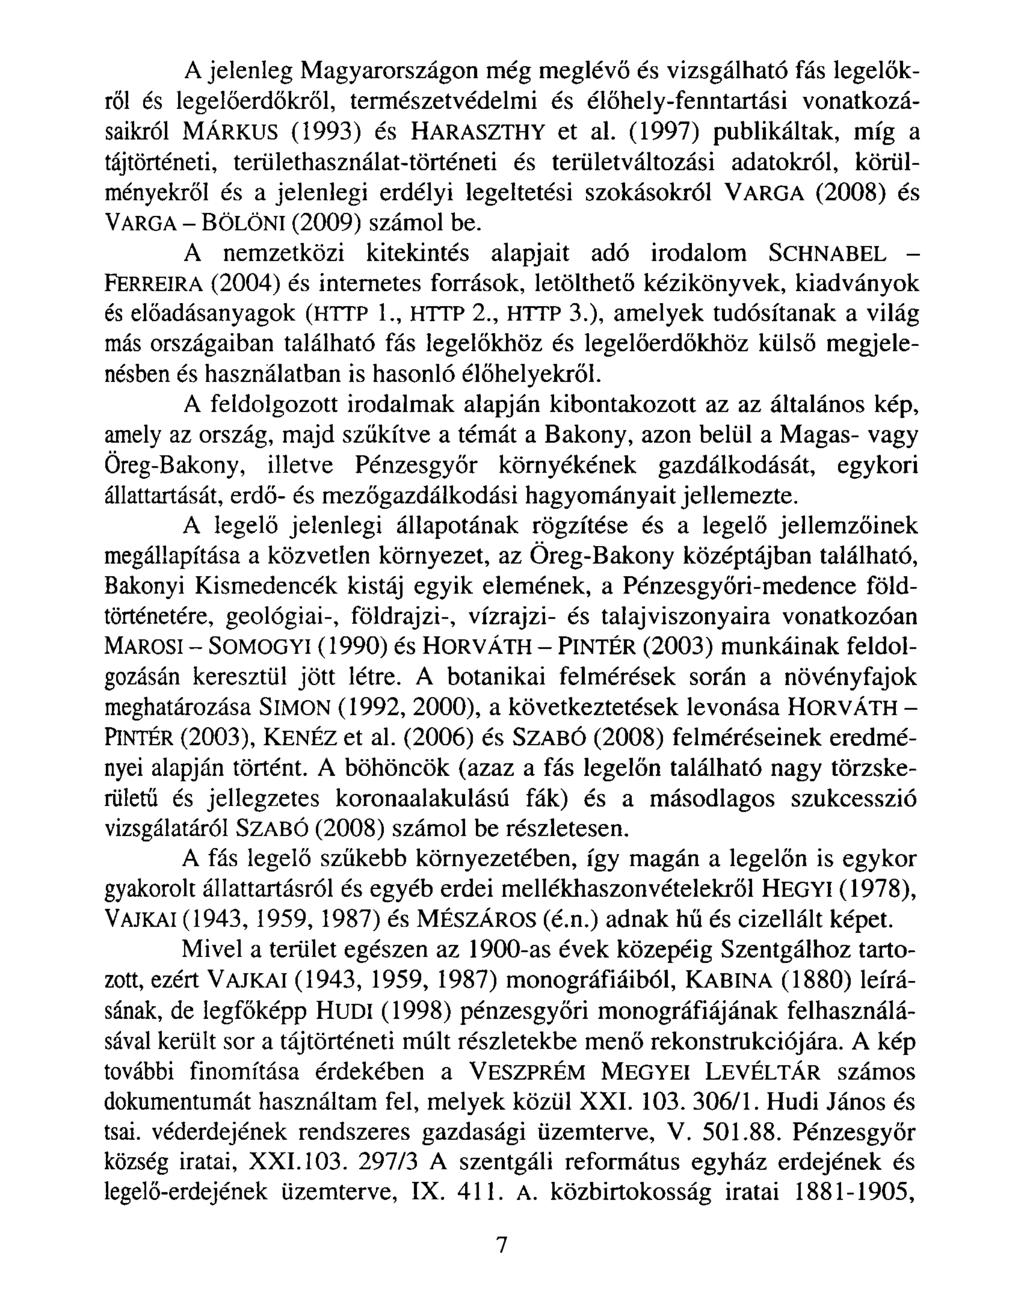 A jelenleg Magyarországon még m eglévő és vizsgálható fás legelőkről és legelőerdőkről, természetvédelmi és élőhely-fenntartási vonatkozásaikról Márkus (1993) és Haraszthy et al.